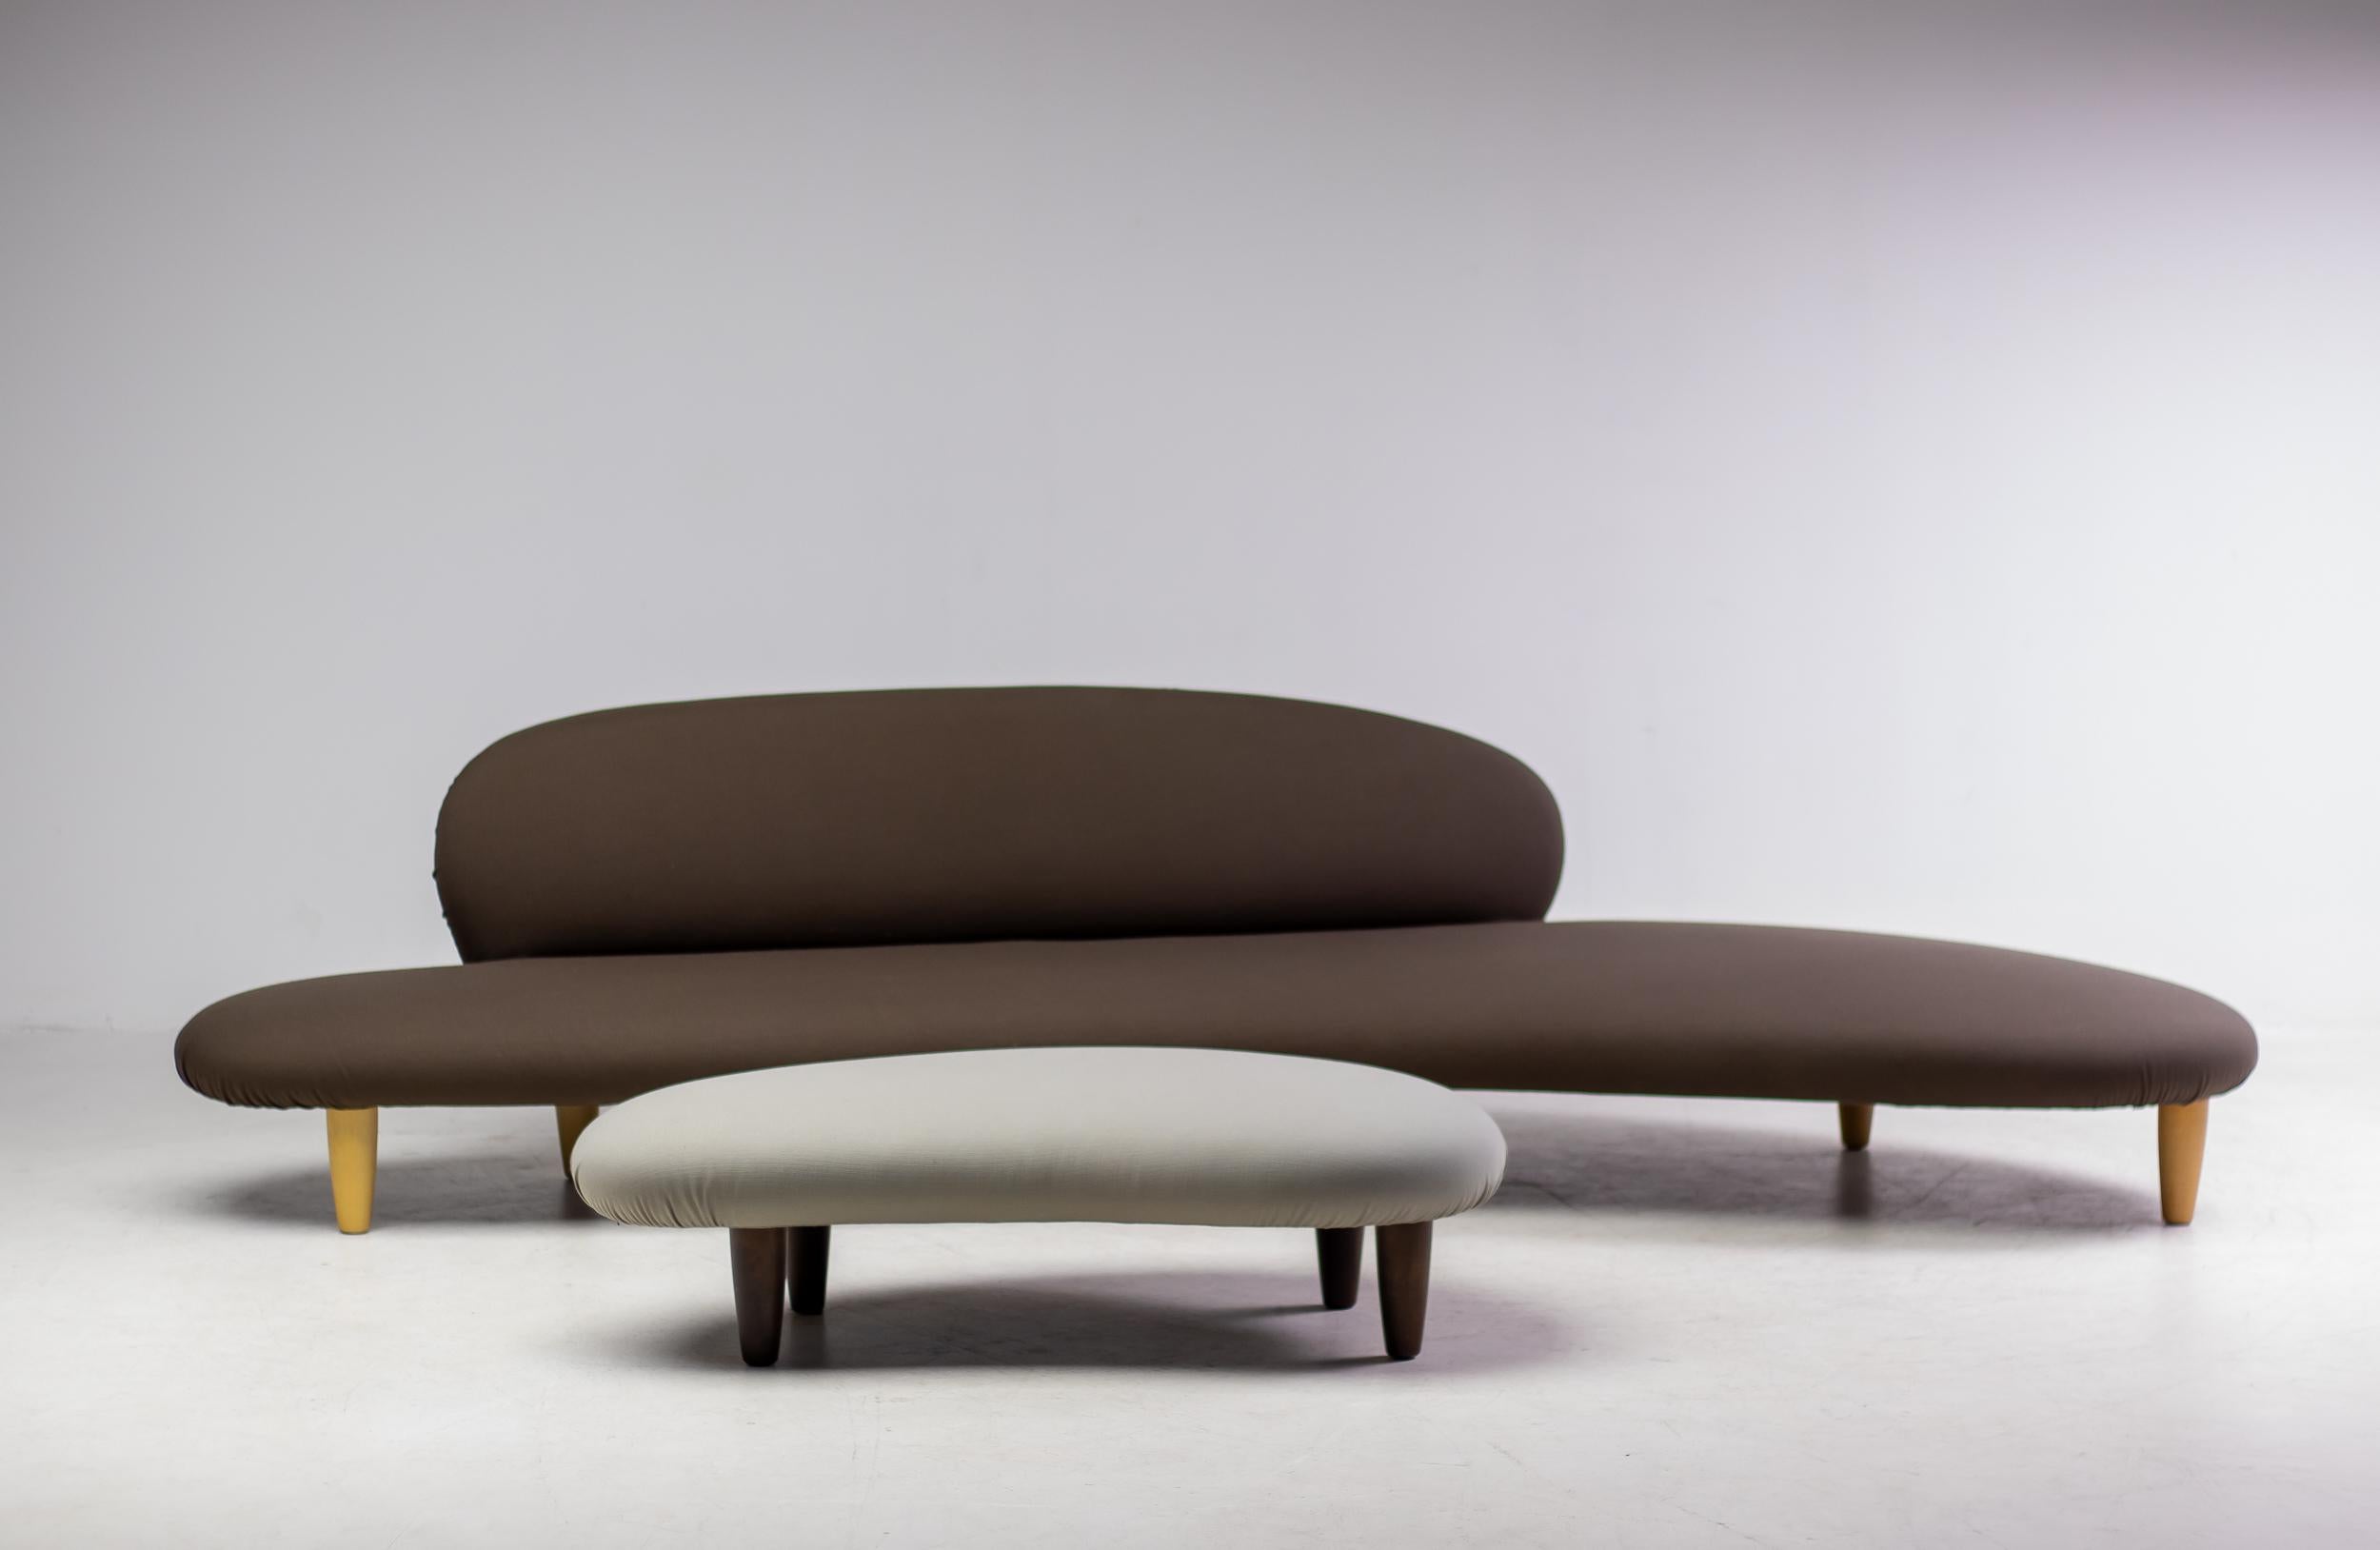 La qualité sculpturale du vocabulaire de design de Noguchi s'exprime dans le Freeform Sofa : il est entièrement différent des autres designs de la même période, apparaissant en combinaison avec l'Ottoman comme une sculpture agrandie de pierres de